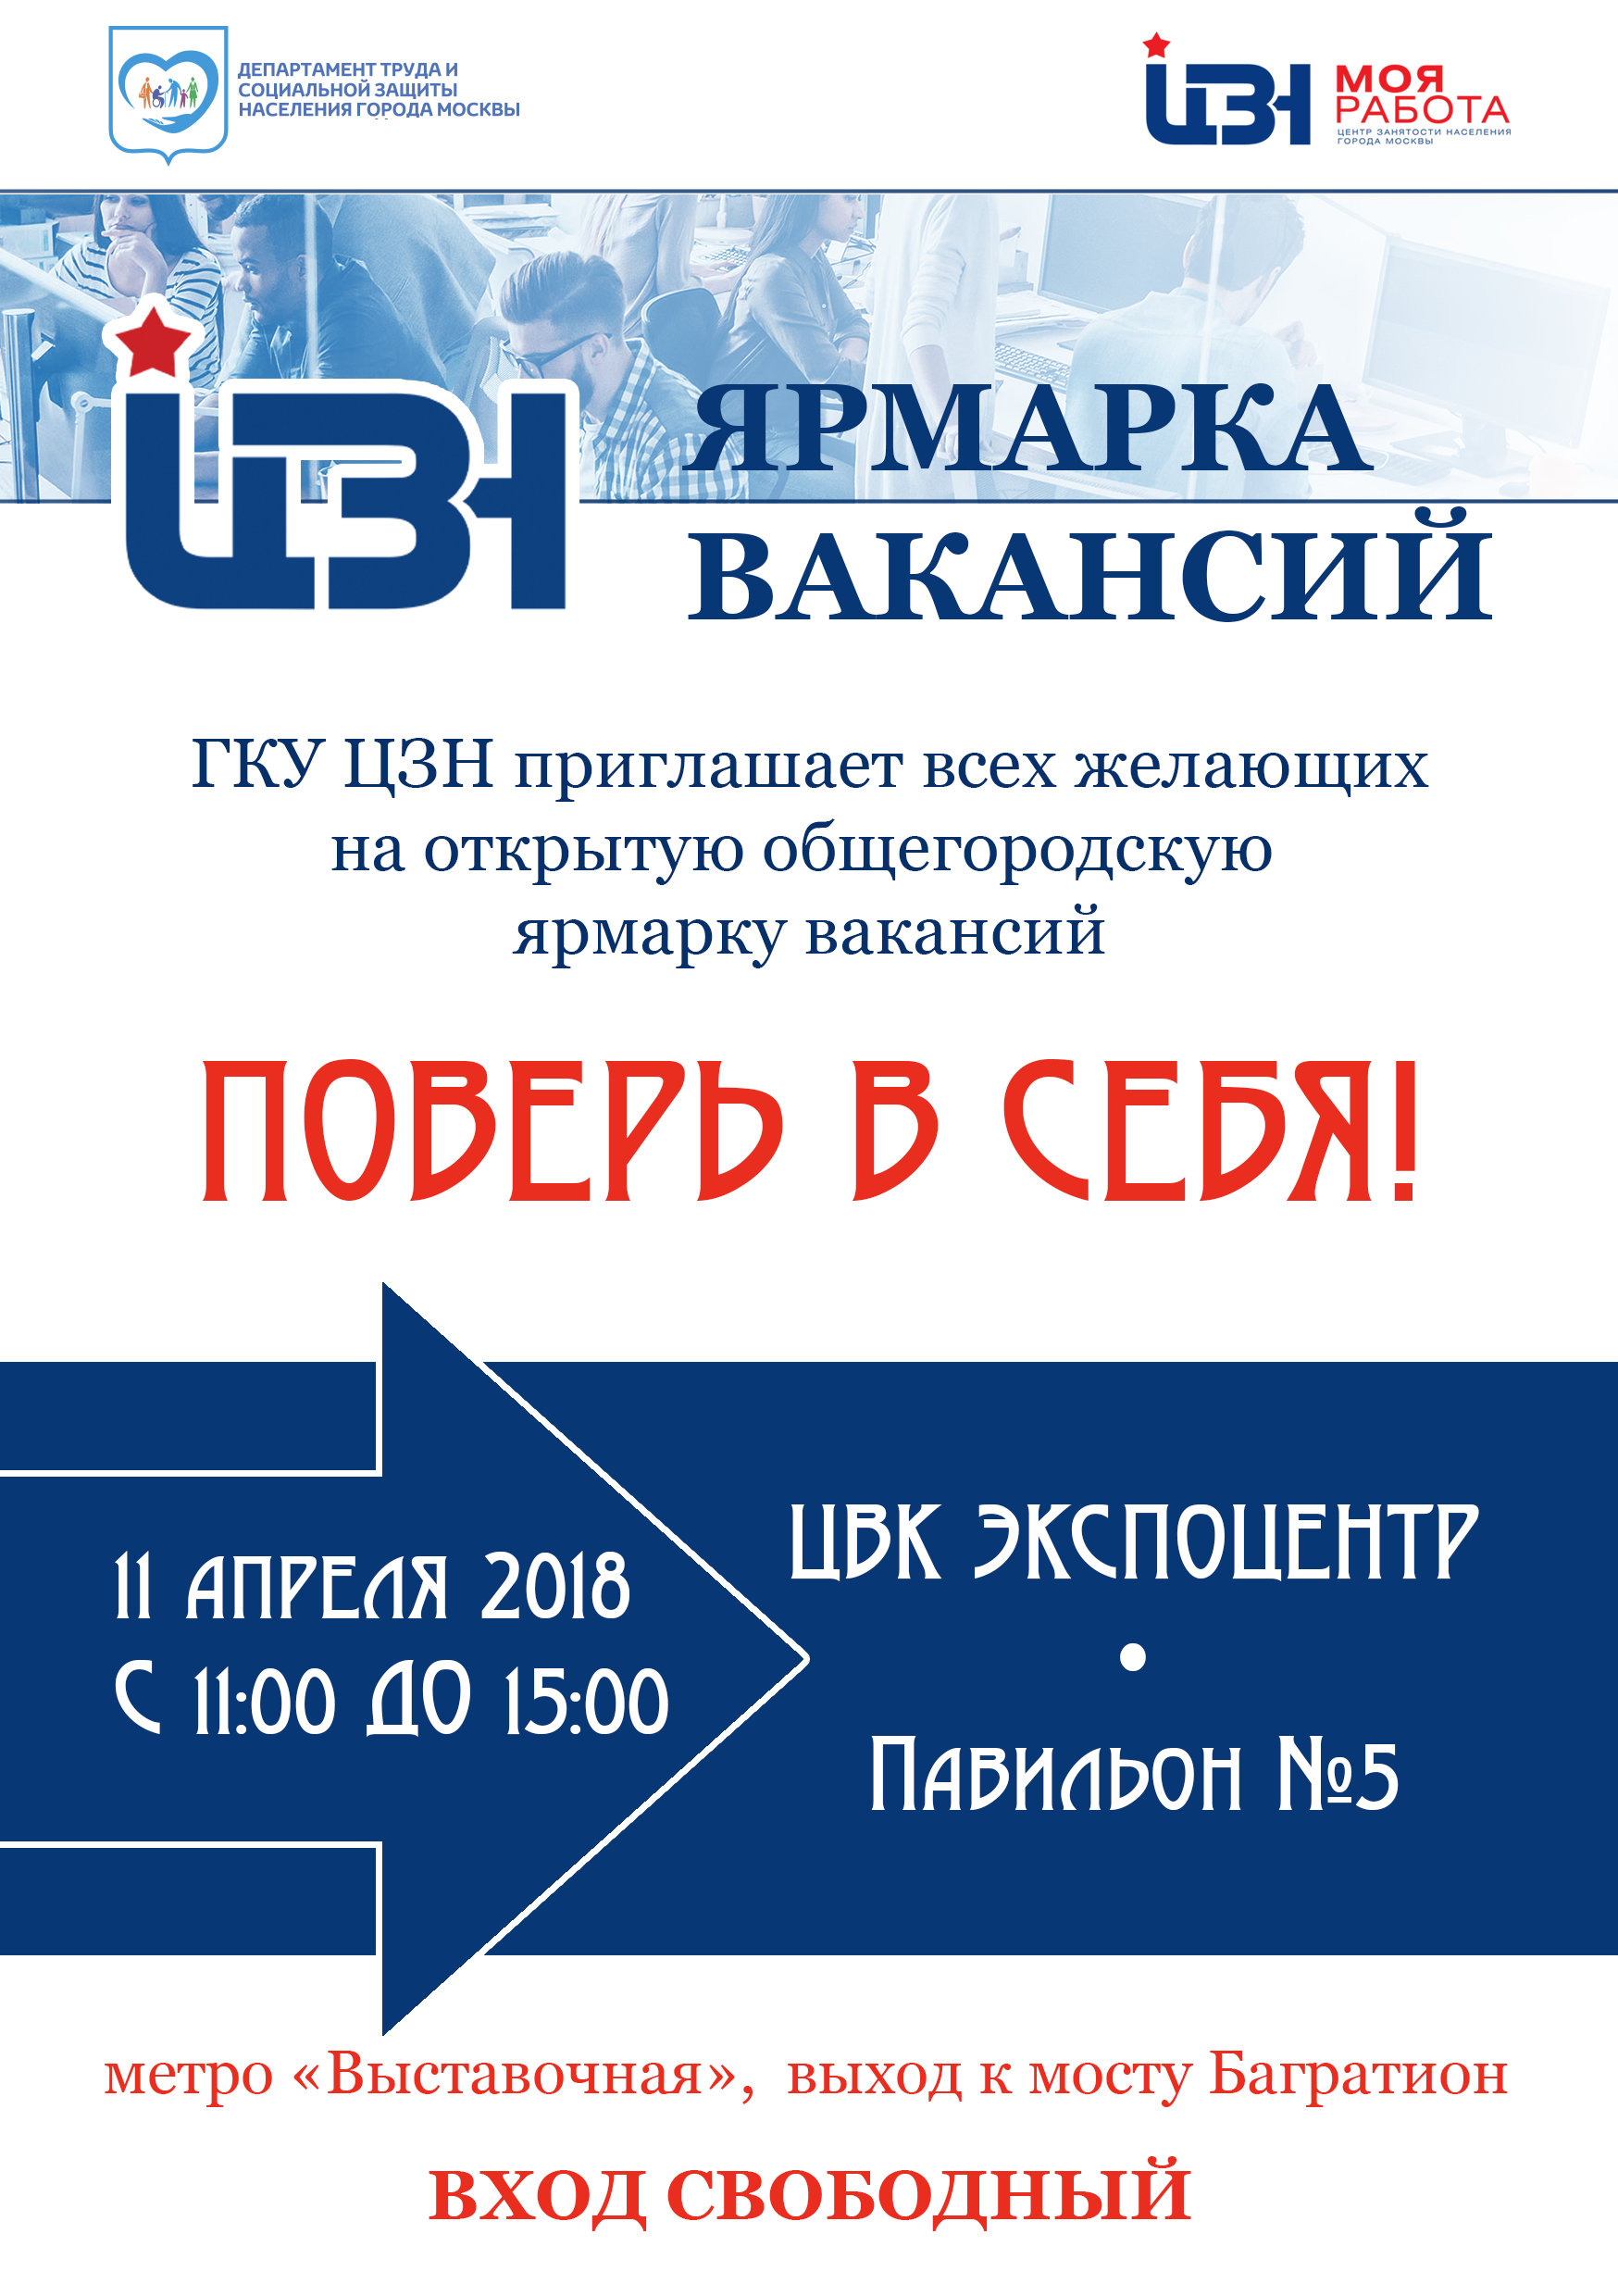 11 апреля 2018 года с 11:00 до 15:00 Департамент труда и социальной защиты населения города Москвы и ГКУ Центр занятости населения города Москвы проводят открытую общегородскую ярмарку вакансий